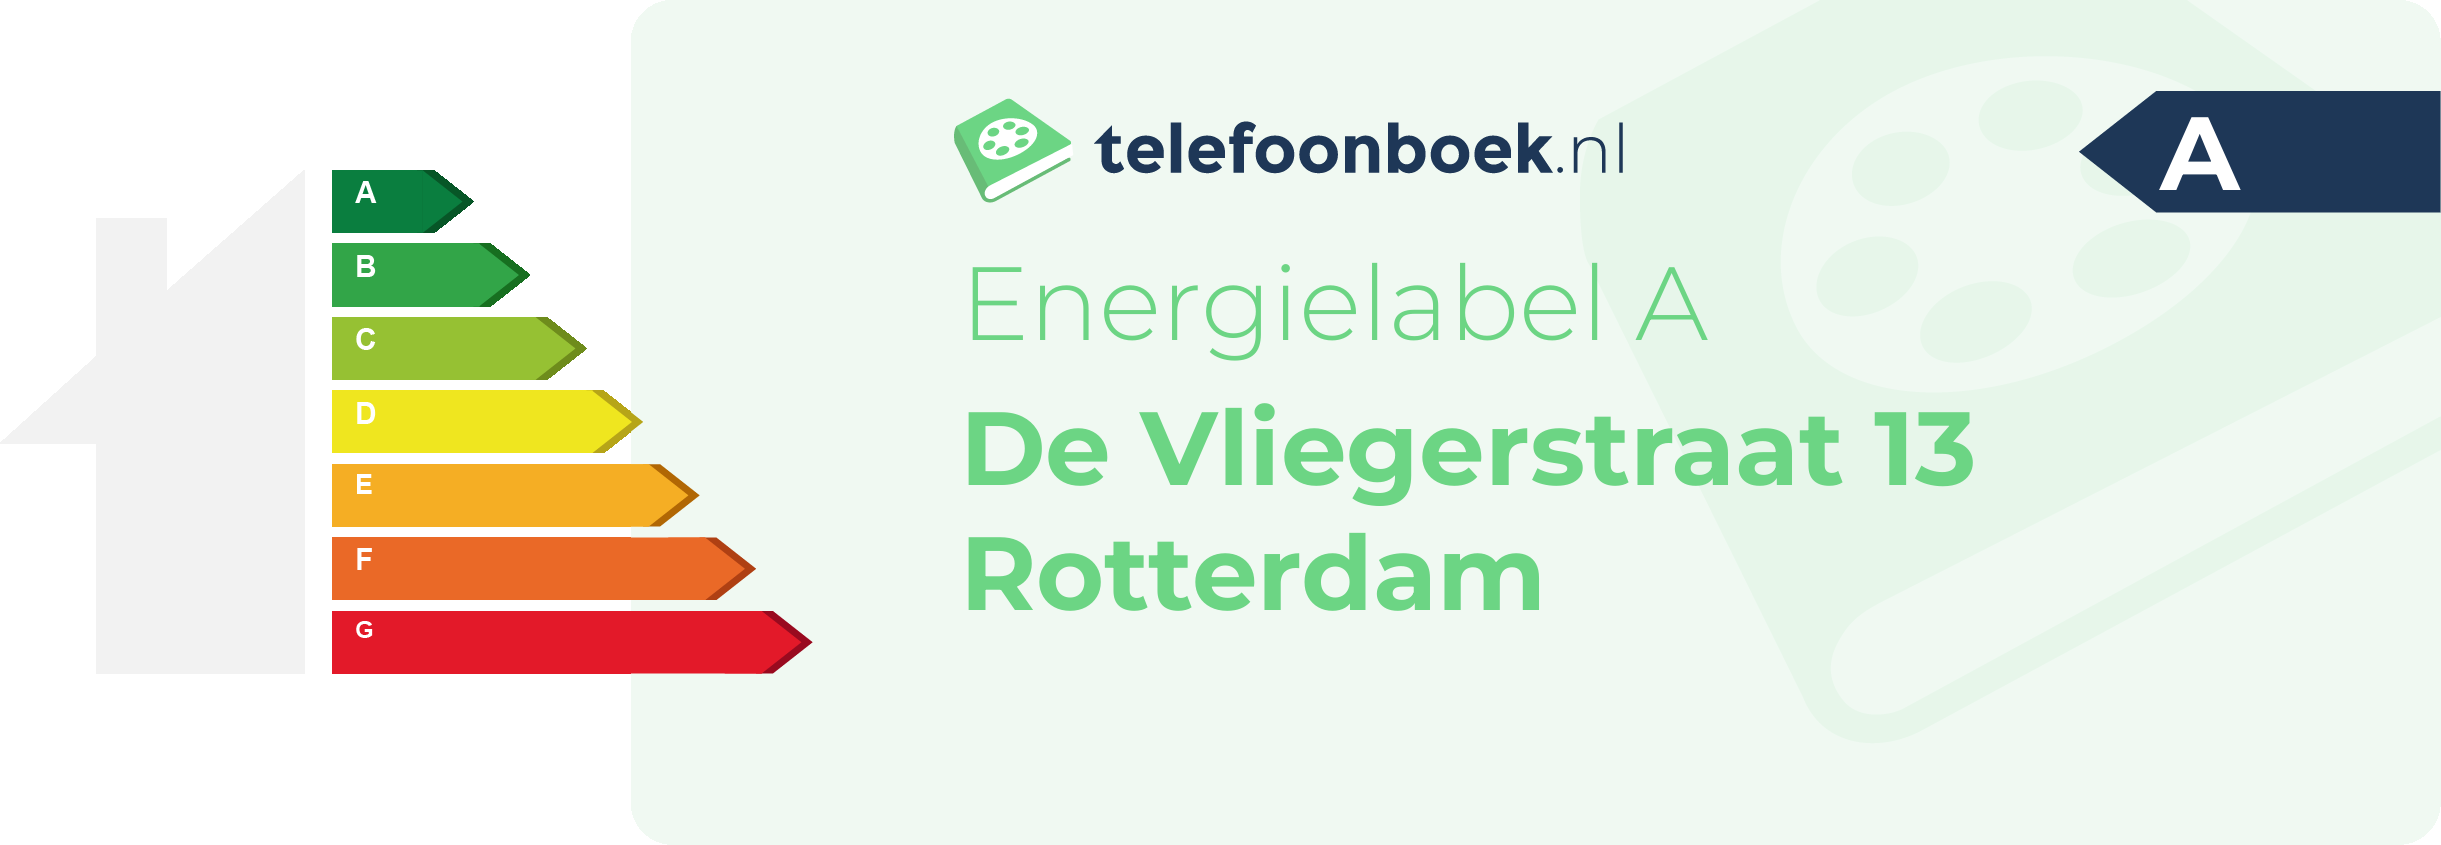 Energielabel De Vliegerstraat 13 Rotterdam